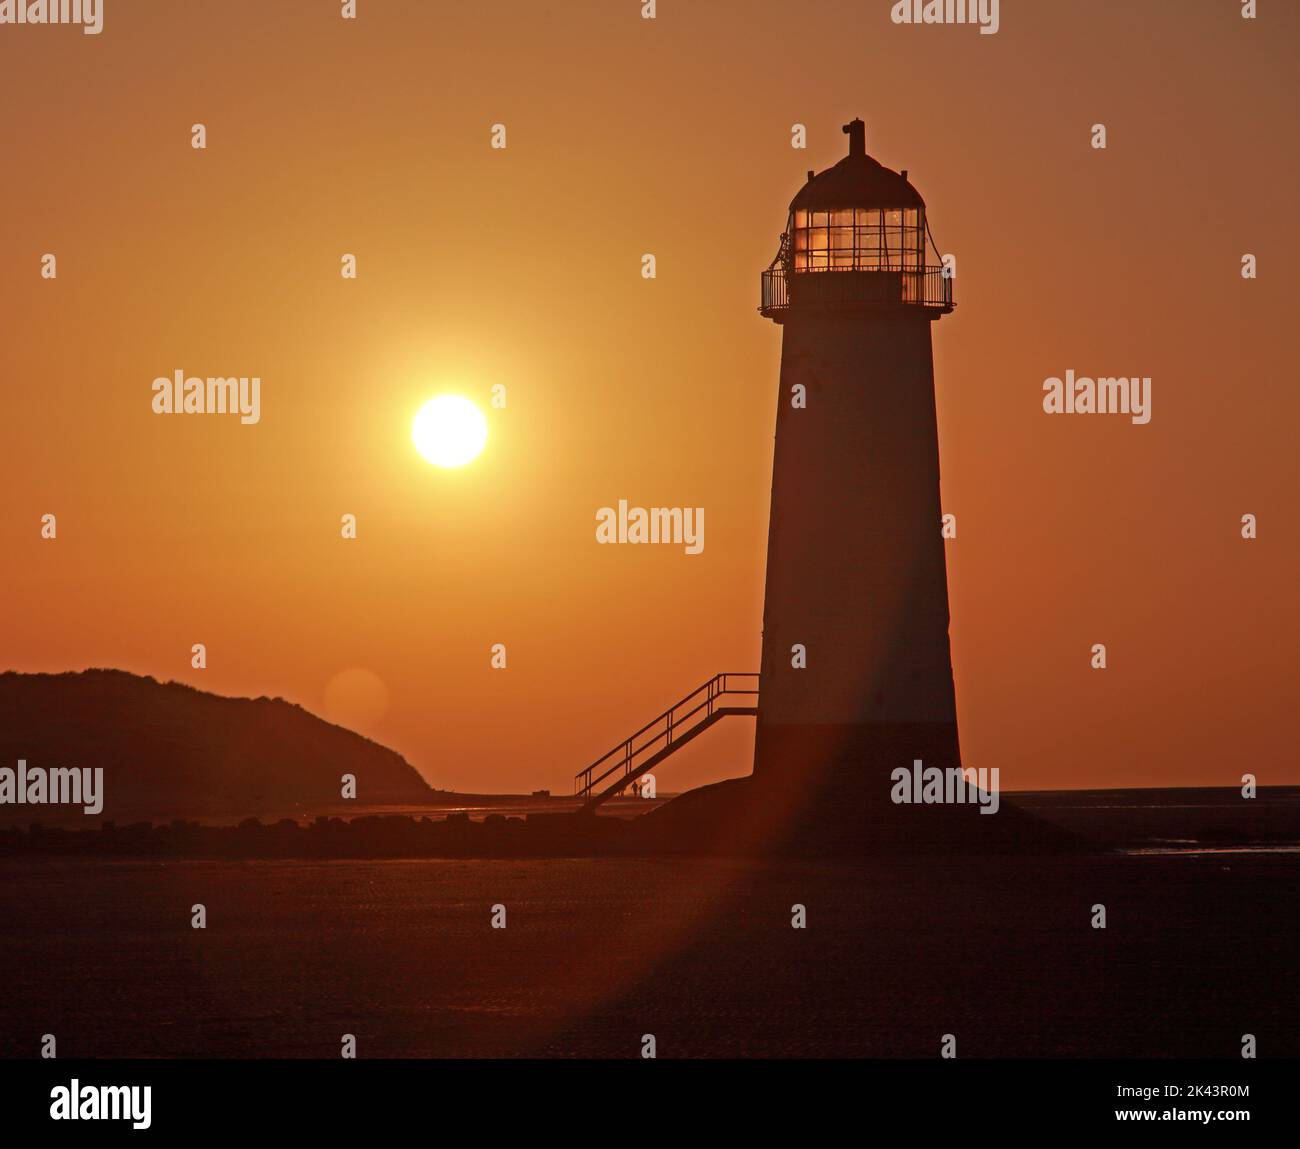 Point of Ayr Lighthouse, auch bekannt als Talacre Lighthouse, Nordküste von Wales, Großbritannien, CH8 9RD, bei Sonnenuntergang am Abend Stockfoto